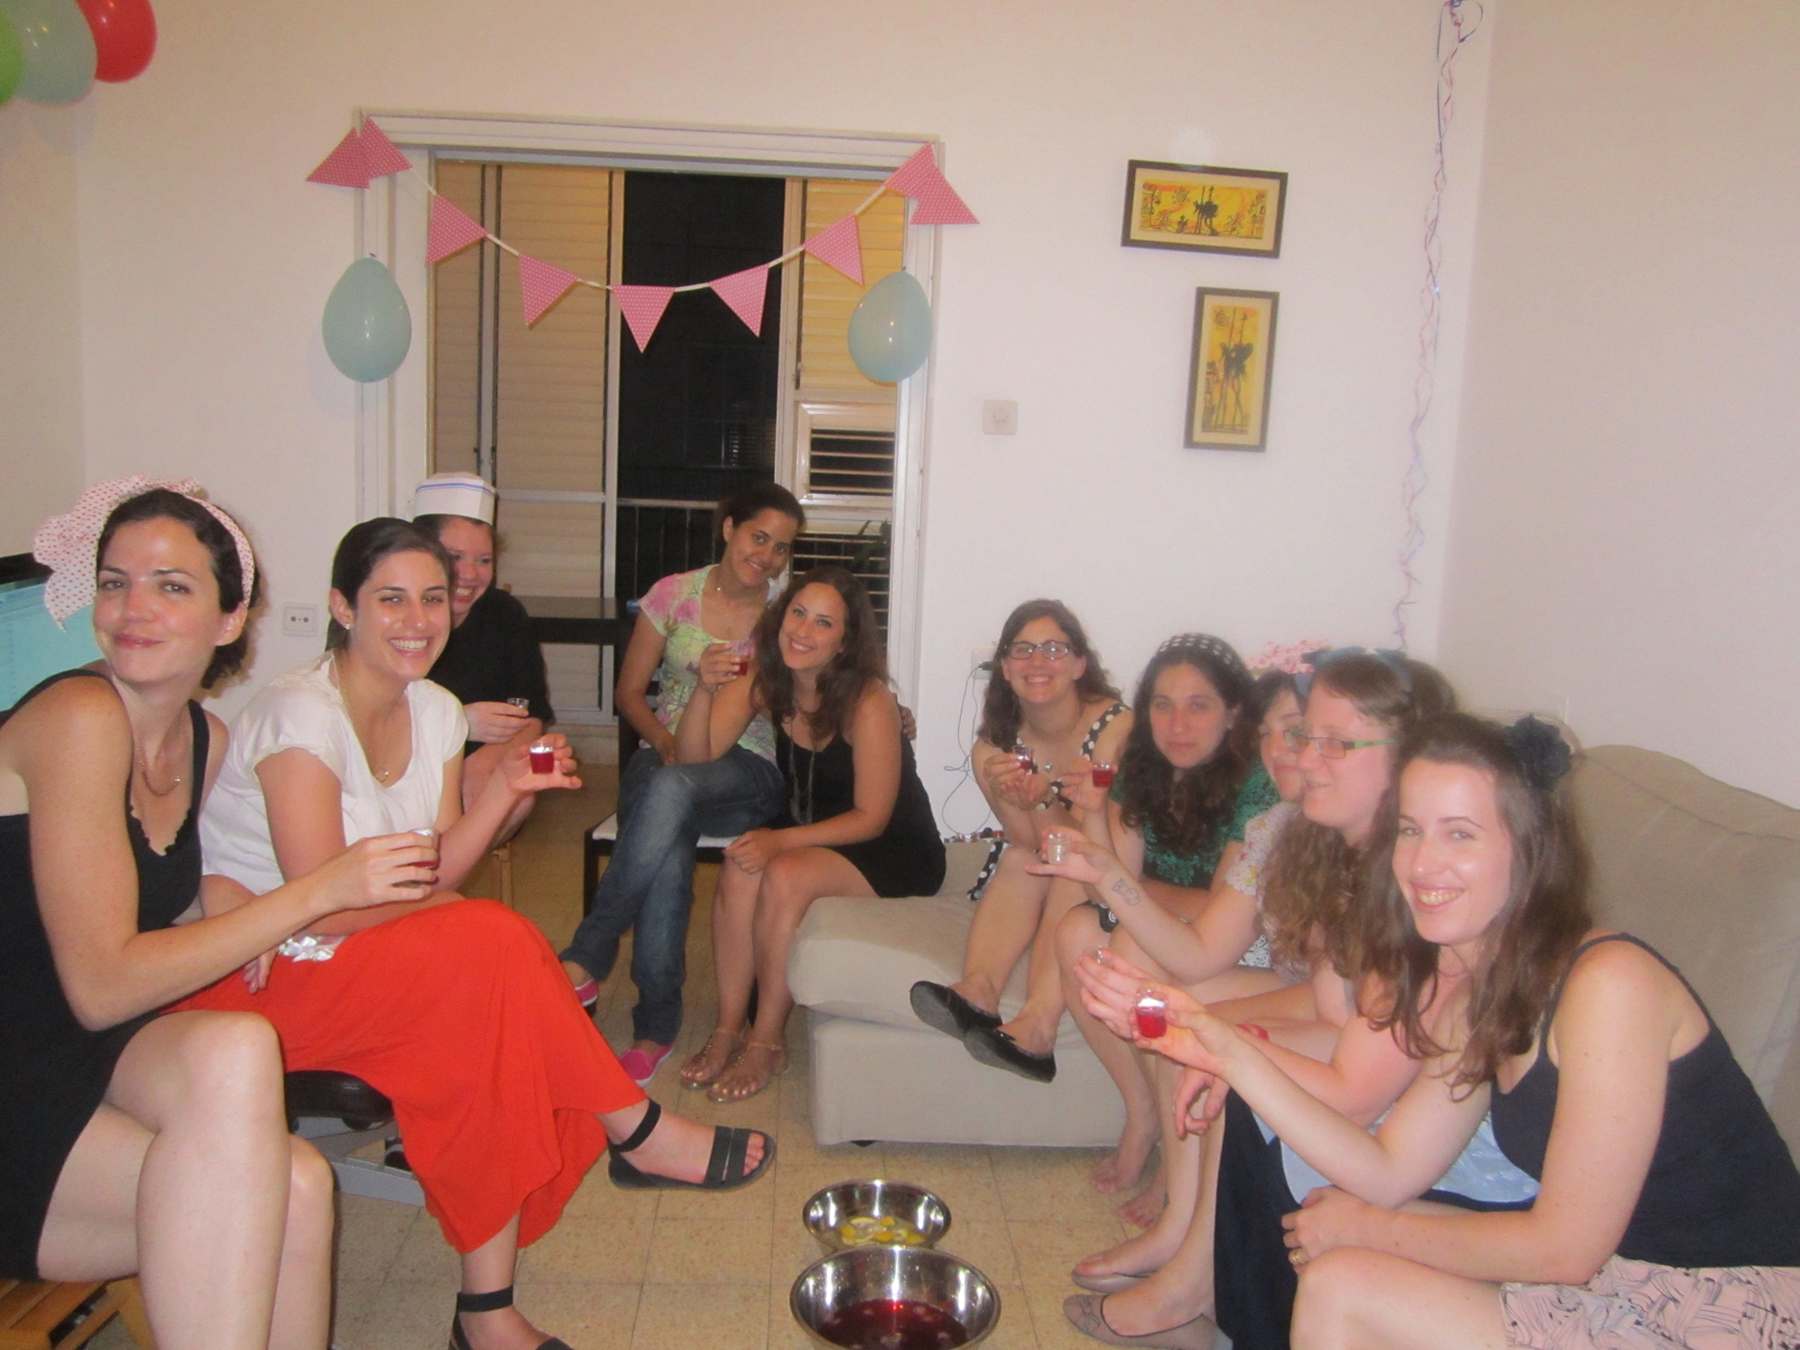  מסיבת רווקות ליאור, תל אביב, 2014